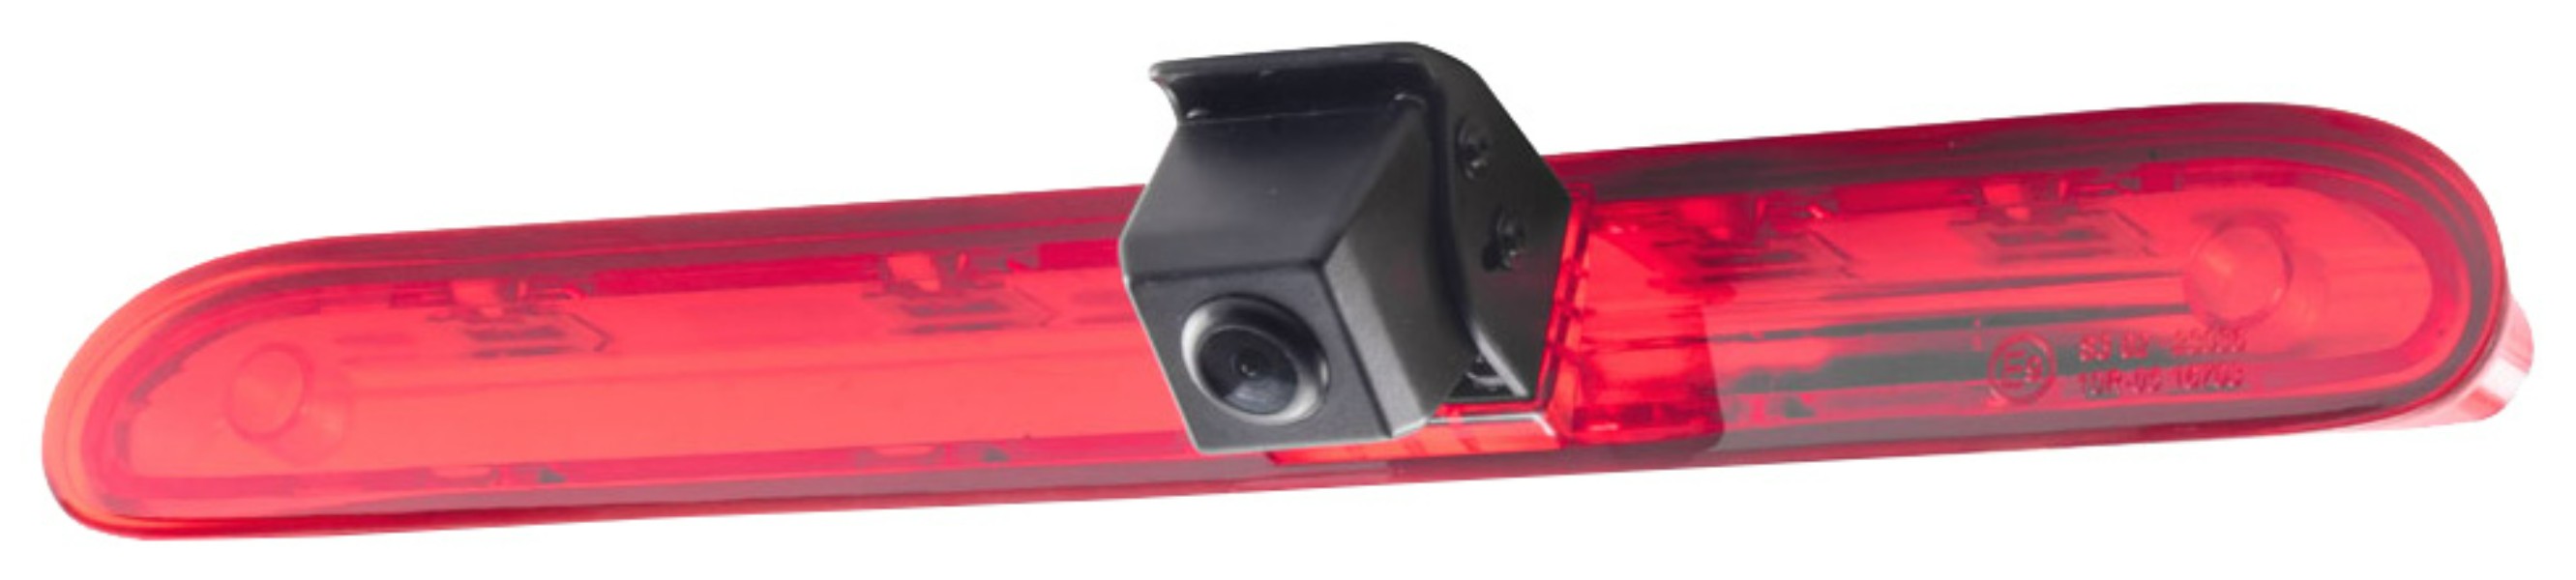 Камера заднего вида Incar (Intro) для Citroen Jumpy III; Peugeot Expert III VDC-423